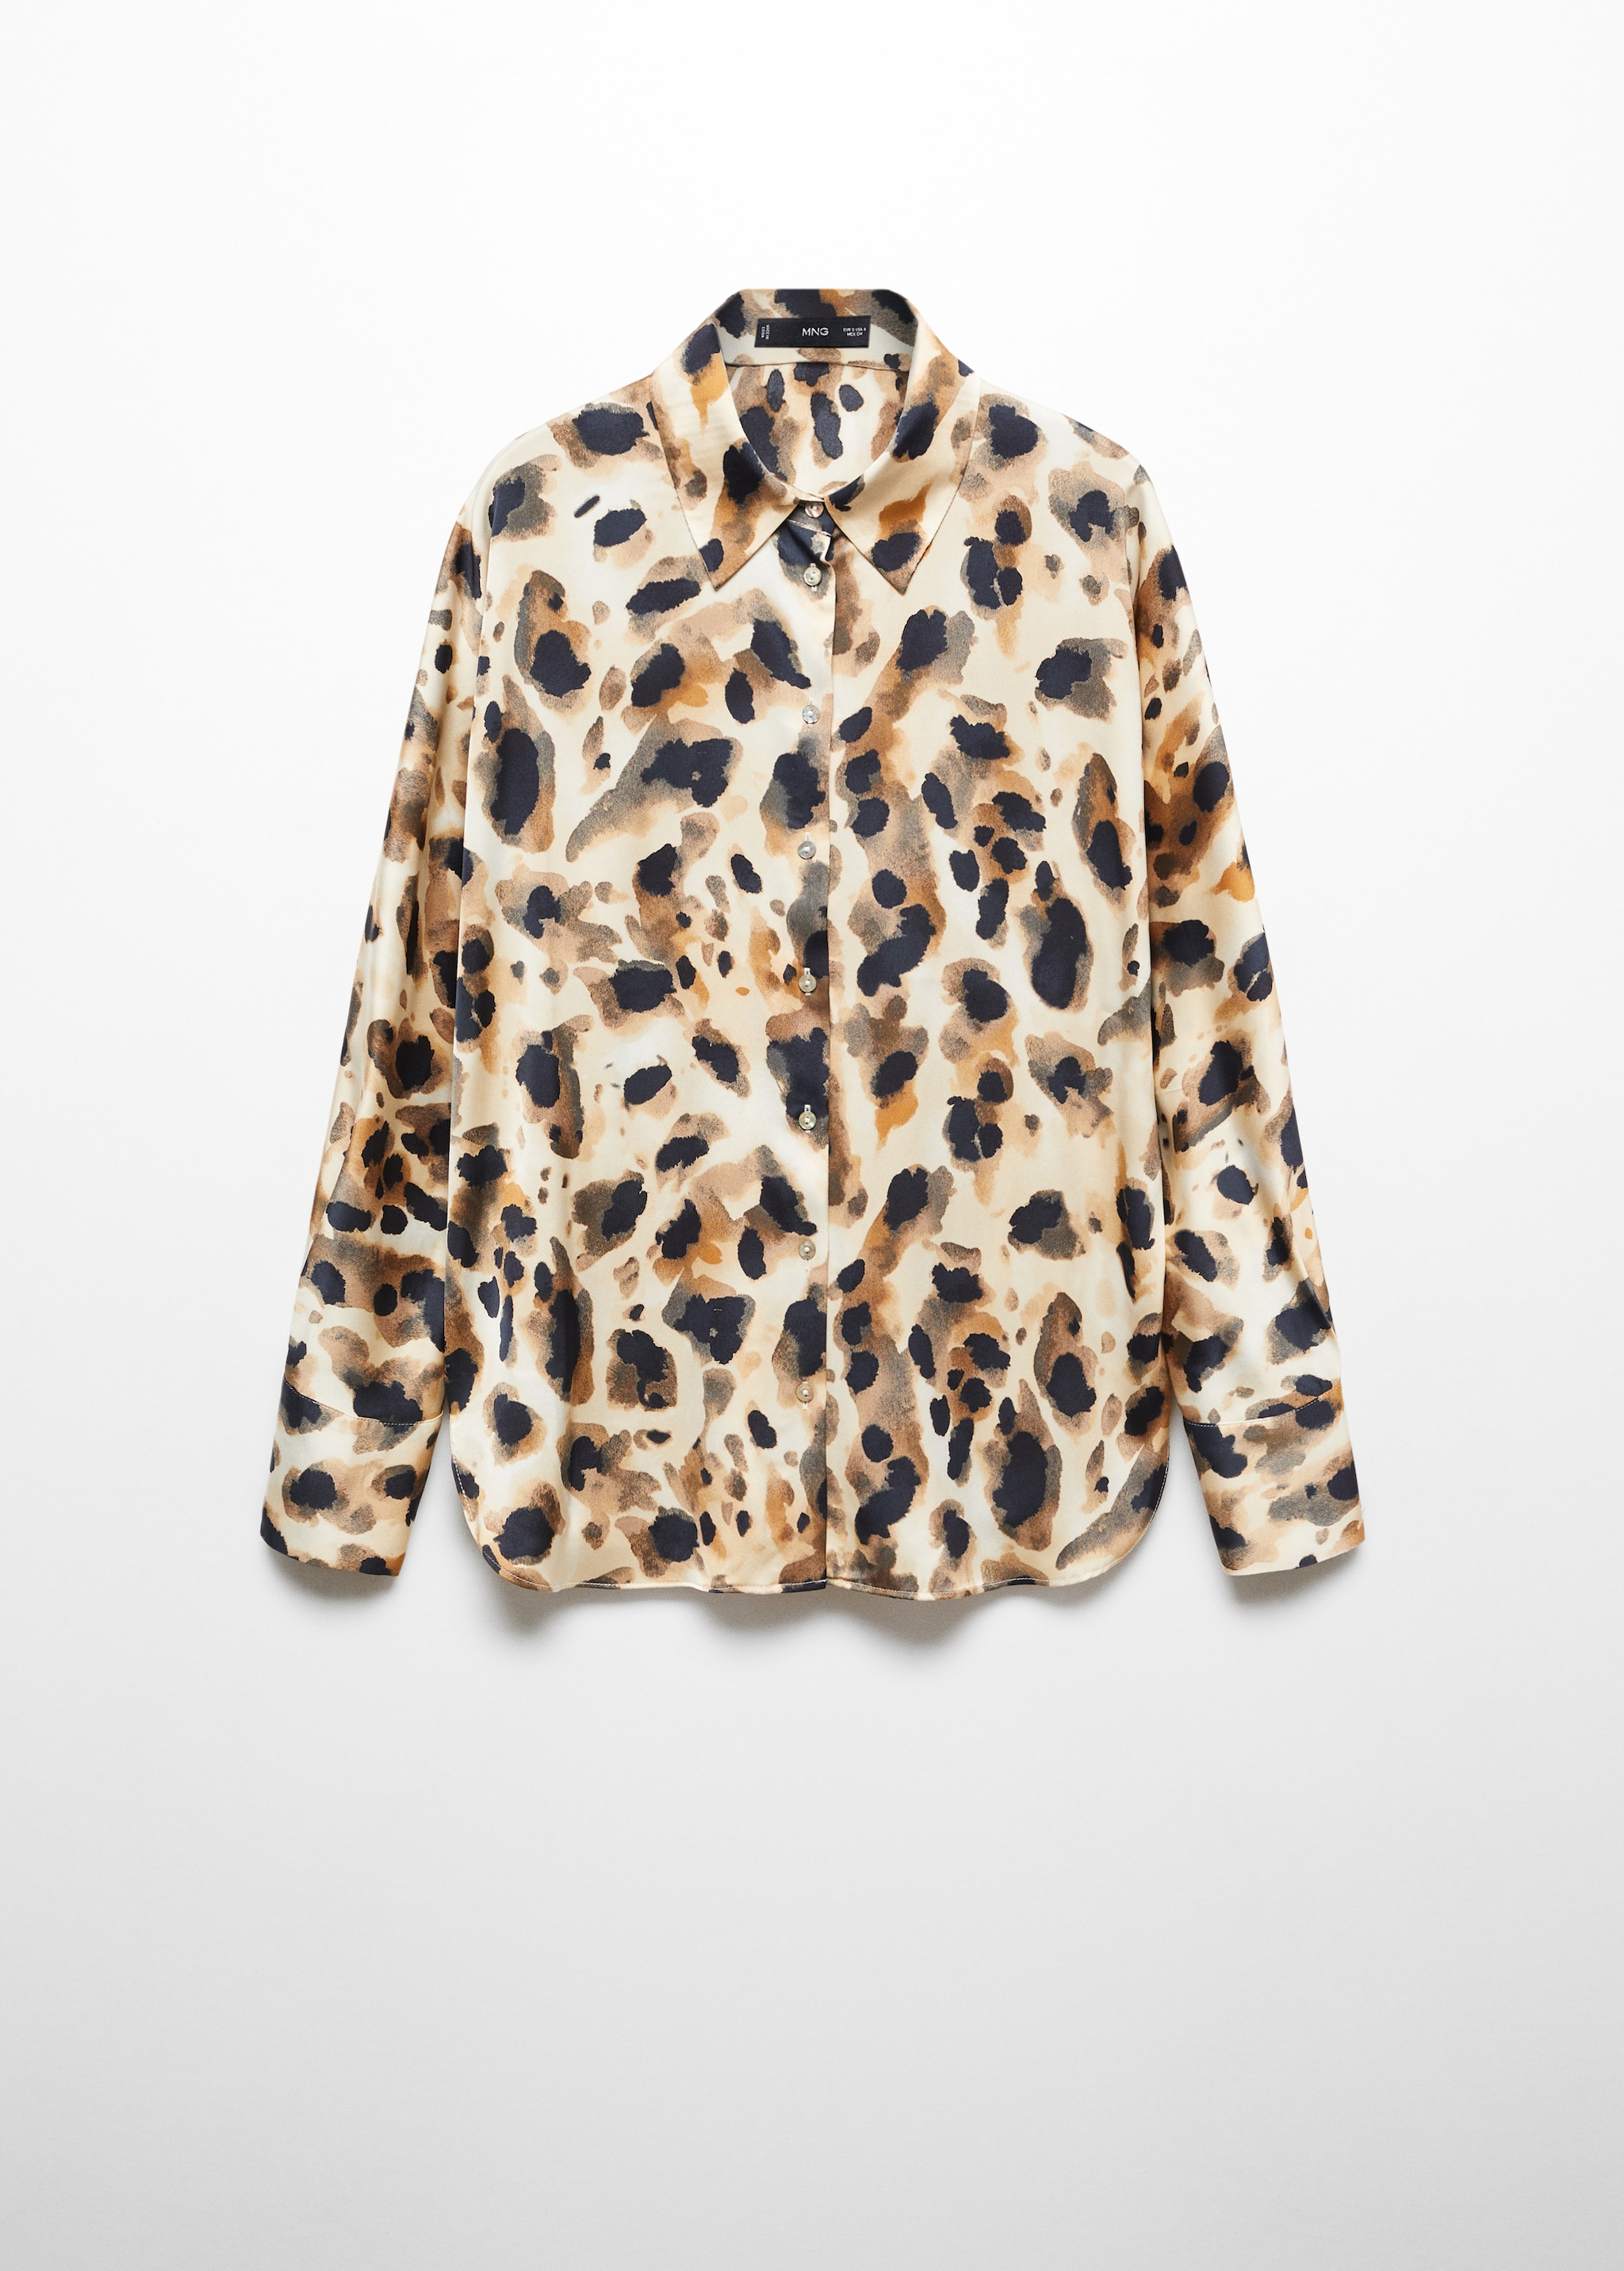 Атласная рубашка с леопардовым принтом - Изделие без модели